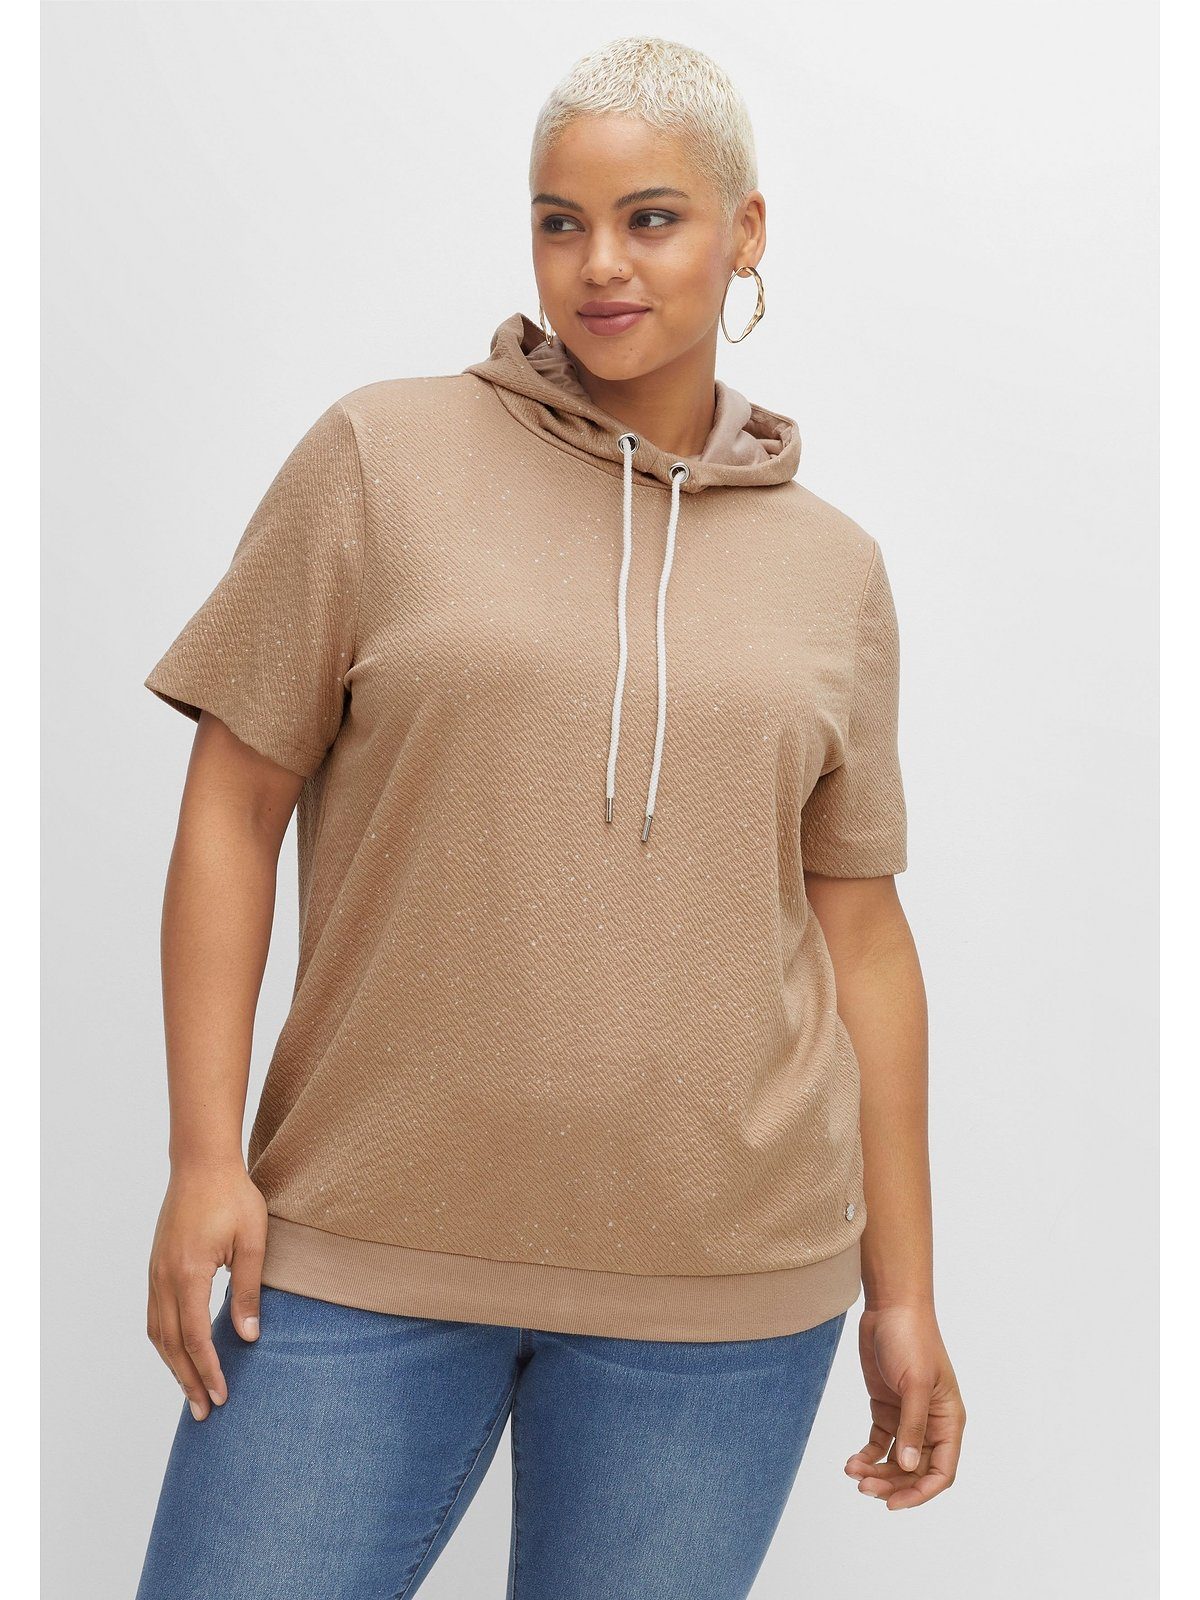 Sheego T-Shirt Große Größen aus leichter Sweatware, mit Kapuze cappuccino meliert | T-Shirts